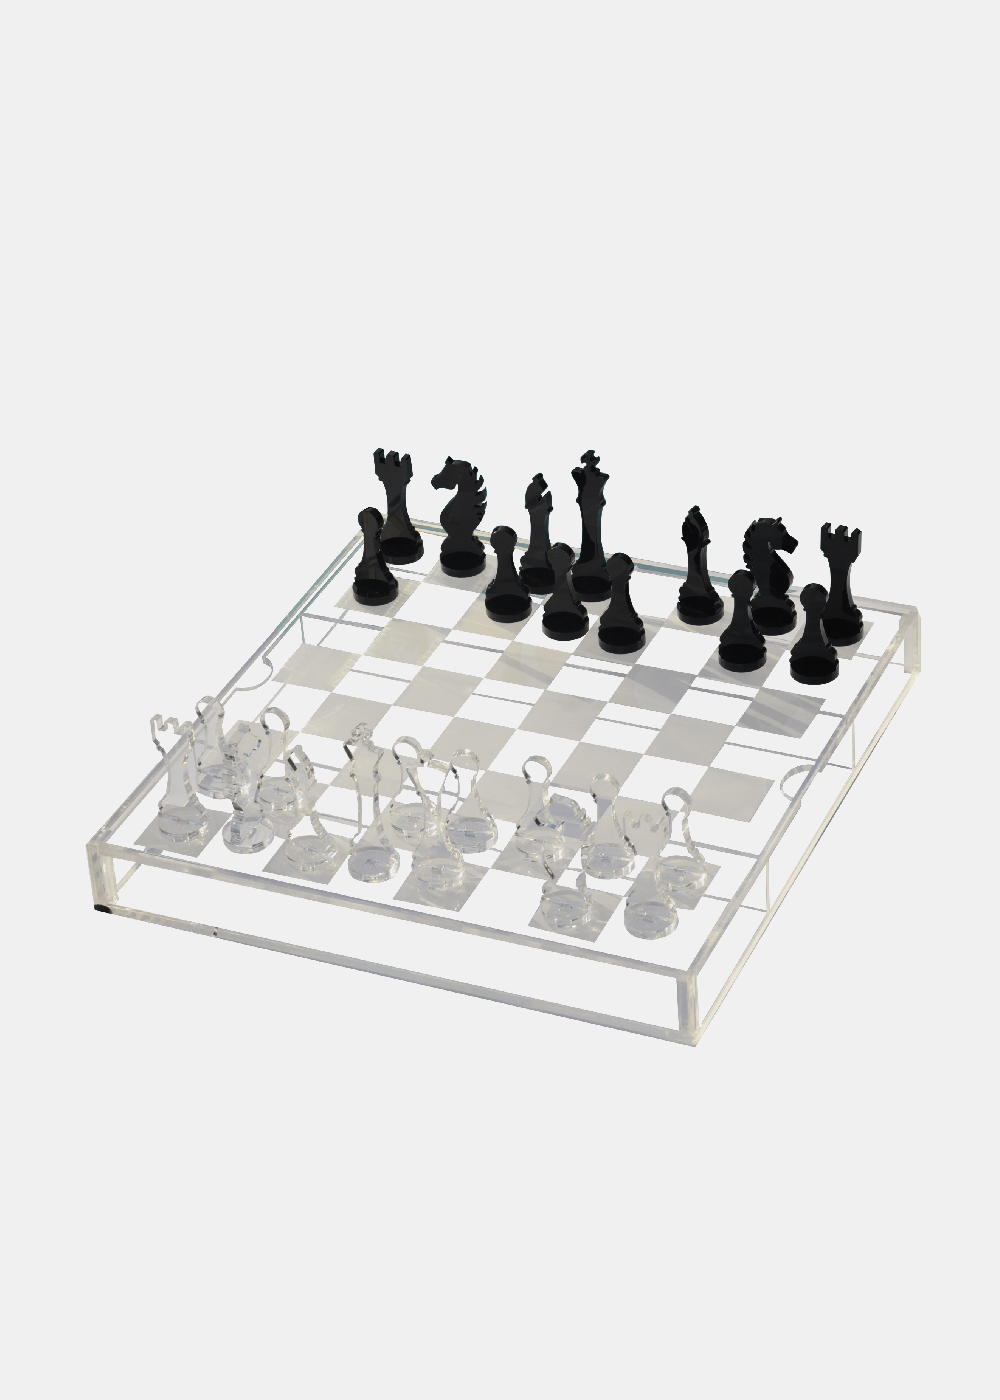 Arquivo de PNG de peças de xadrez